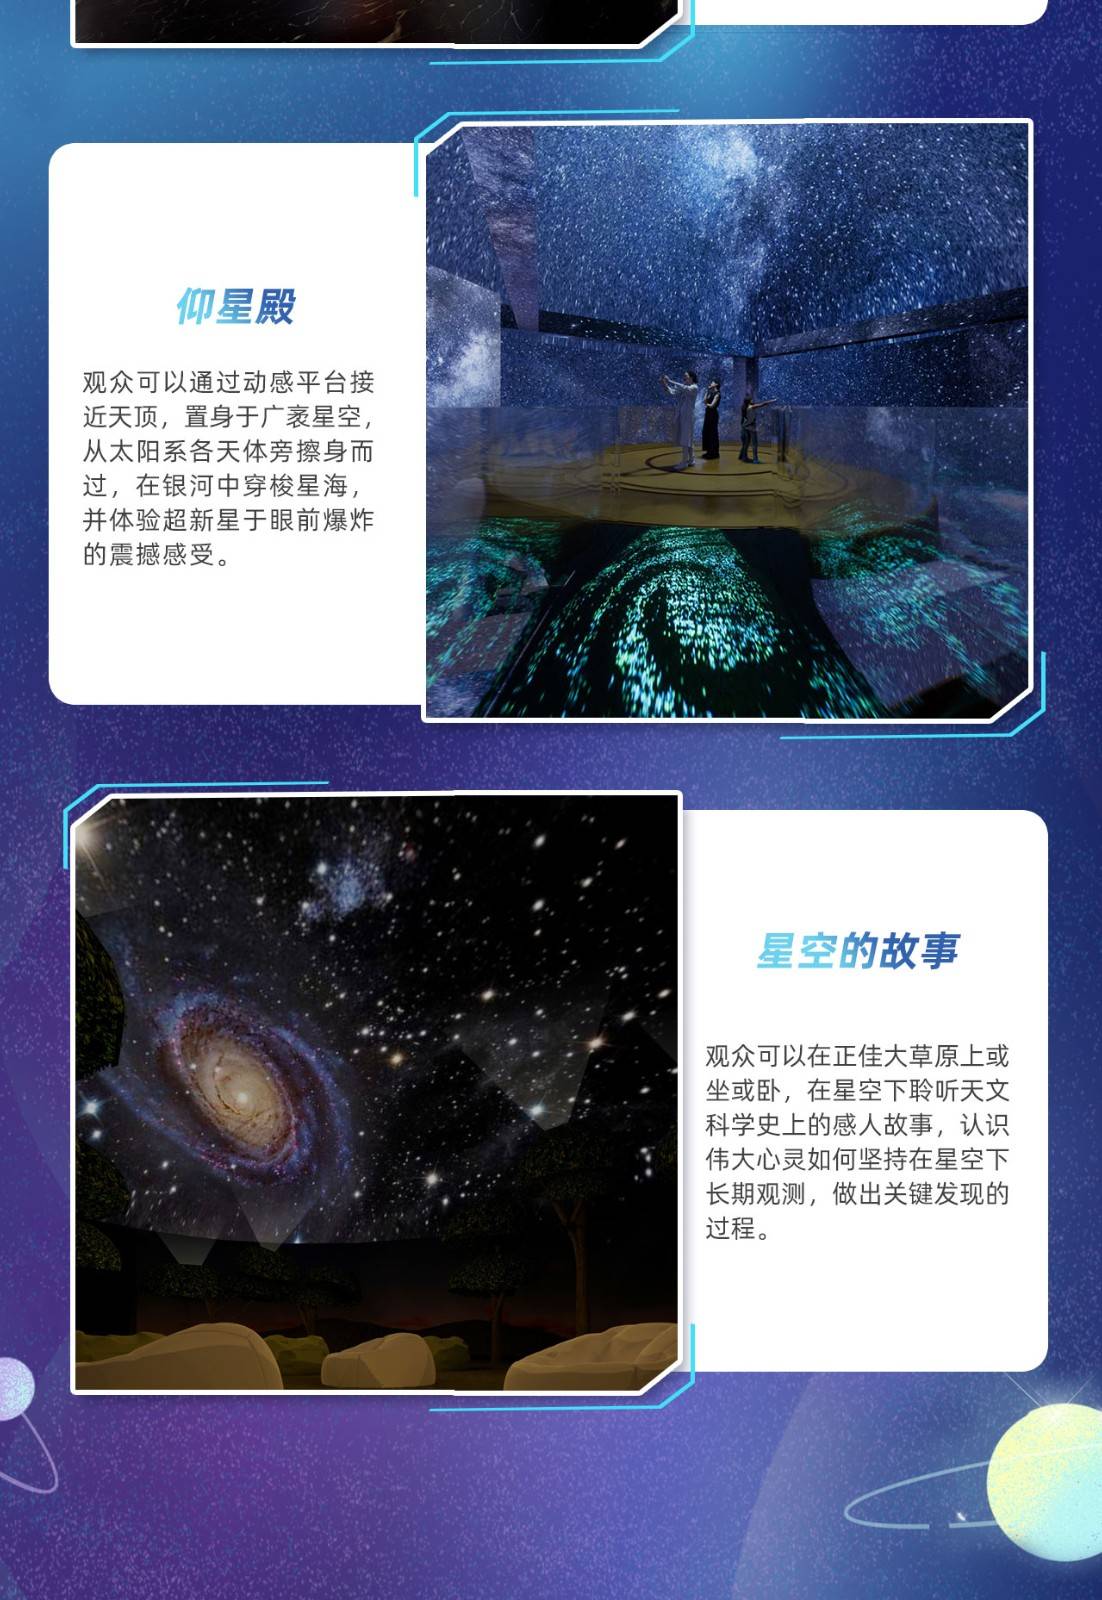 【2023年常规票】 广州正佳科学馆+天文馆联票-学生票